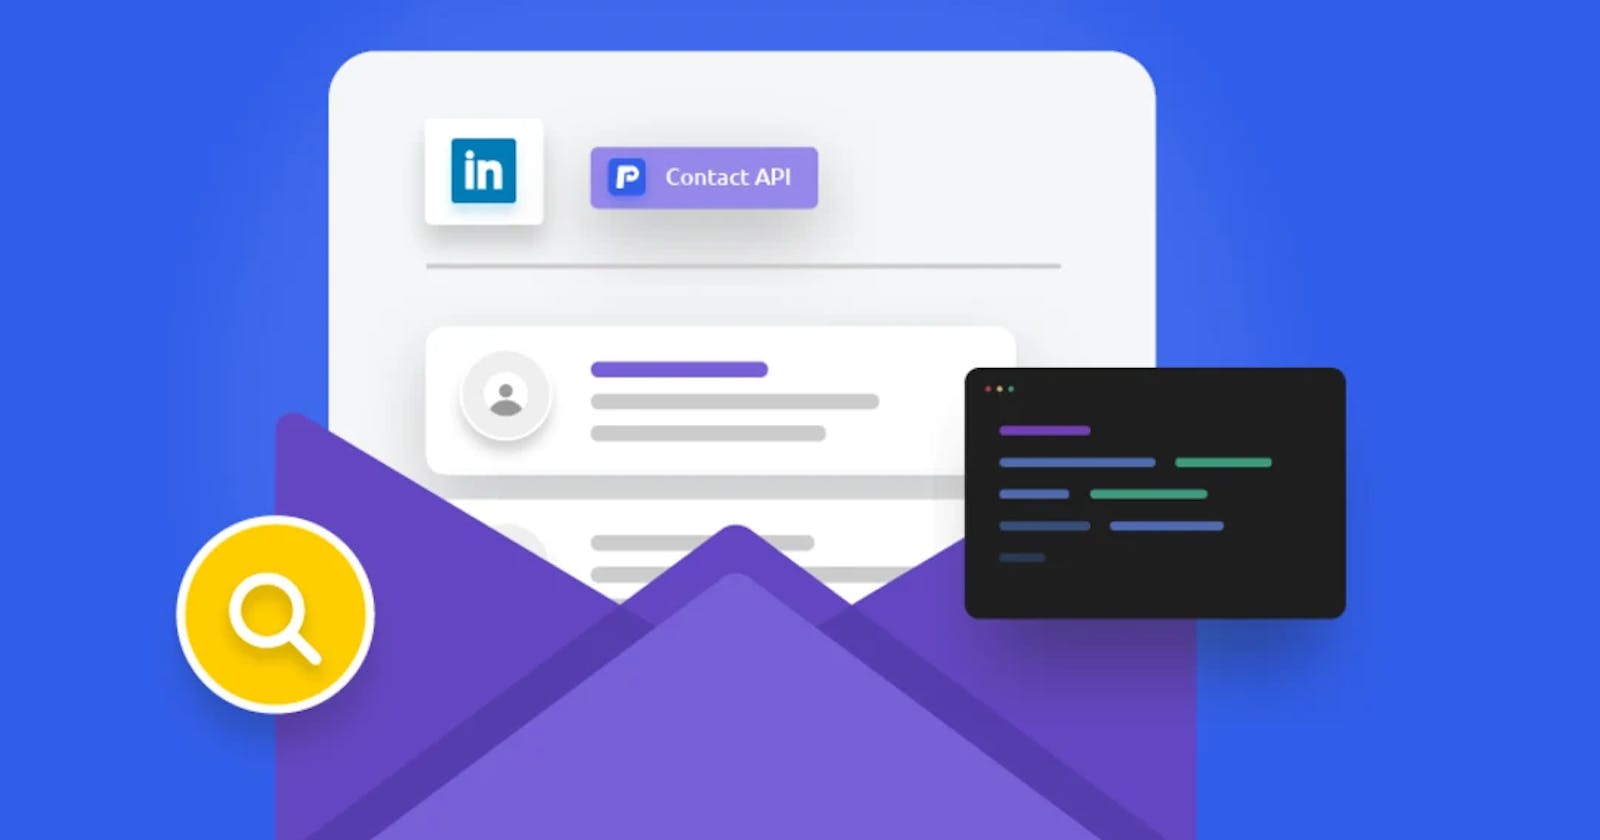 LinkedIn Email Finder API